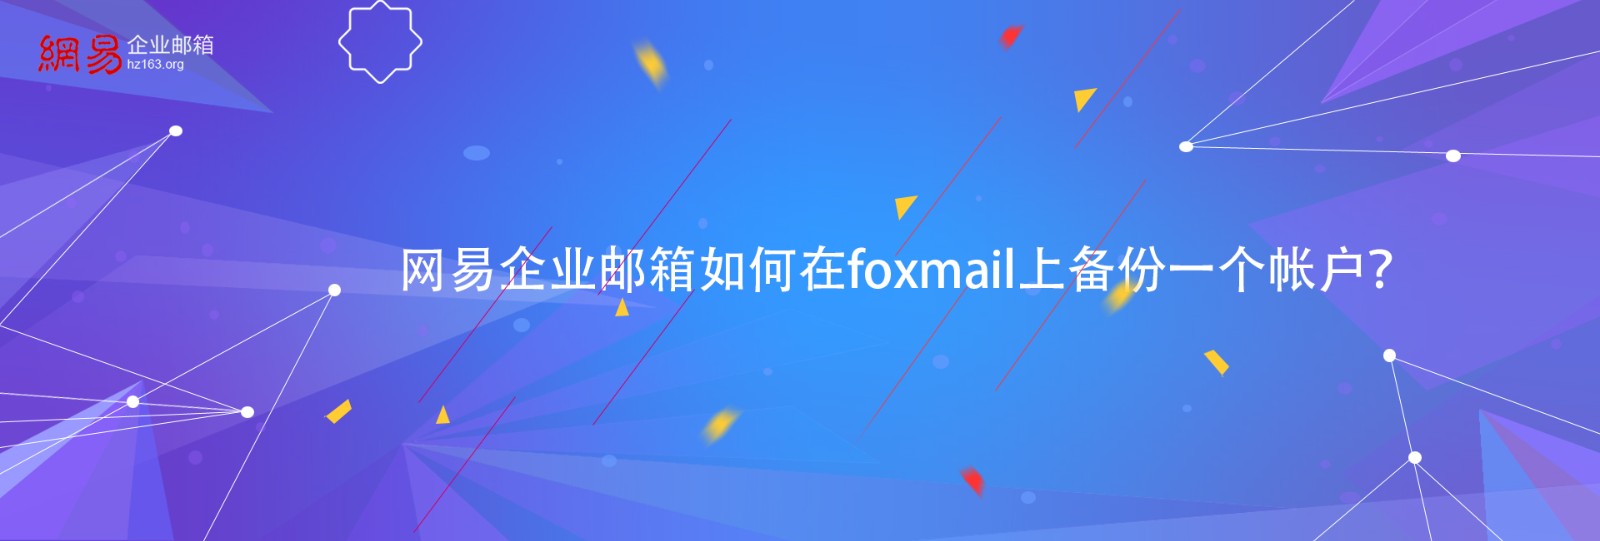 网易企业邮箱如何在foxmail上备份一个帐户？